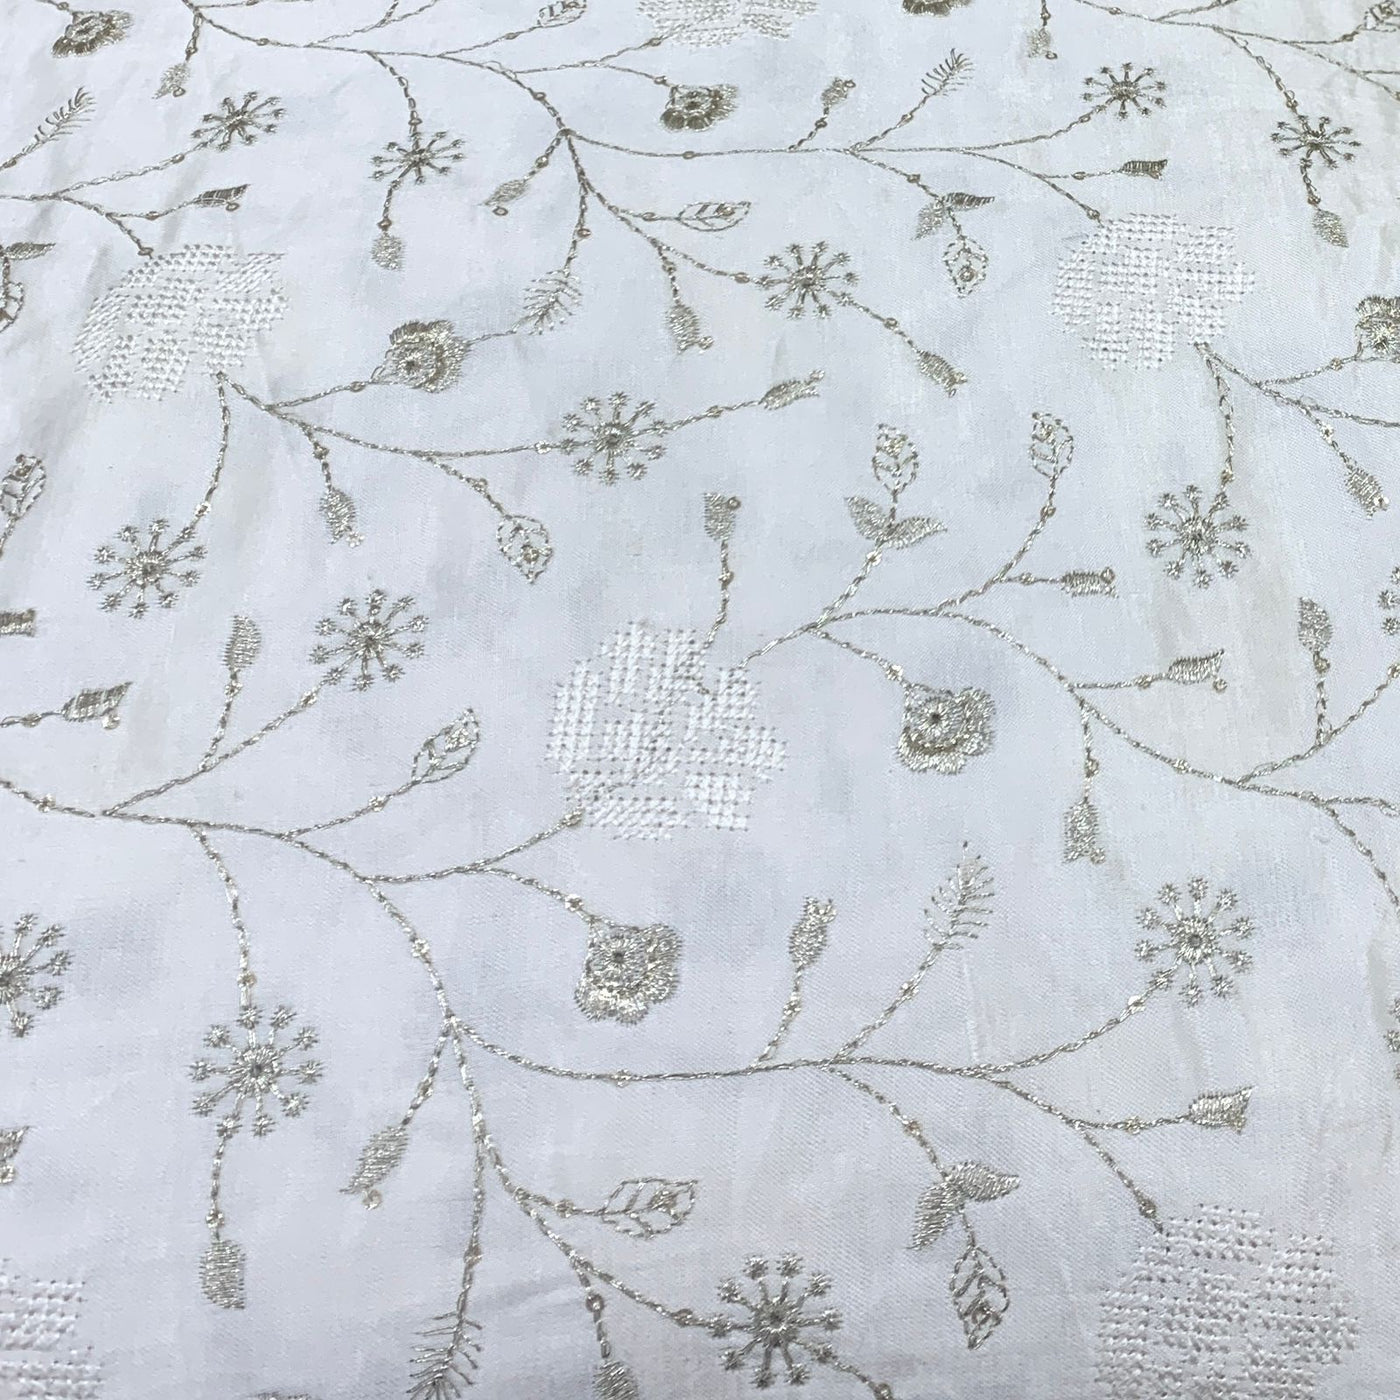 Gajji Satin Printed Fabric